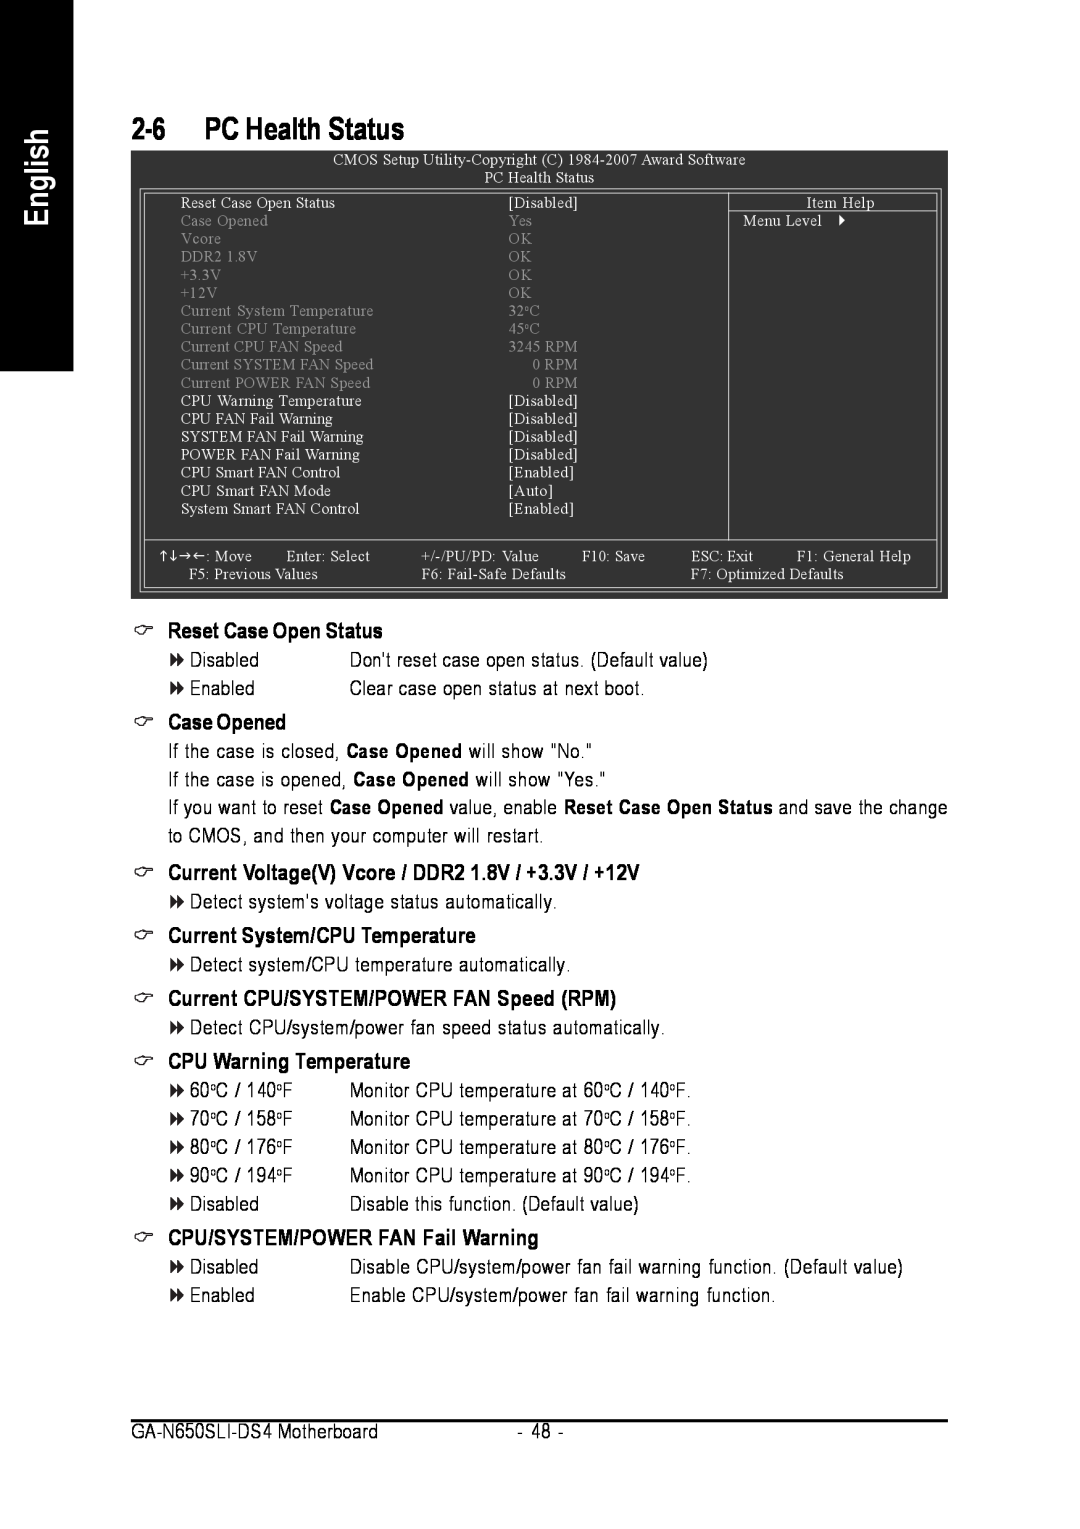 Intel GA-N650SLI-DS4 English, PC Health Status, Case Opened, Current VoltageV Vcore / DDR2 1.8V / +3.3V / +12V, Disabled 